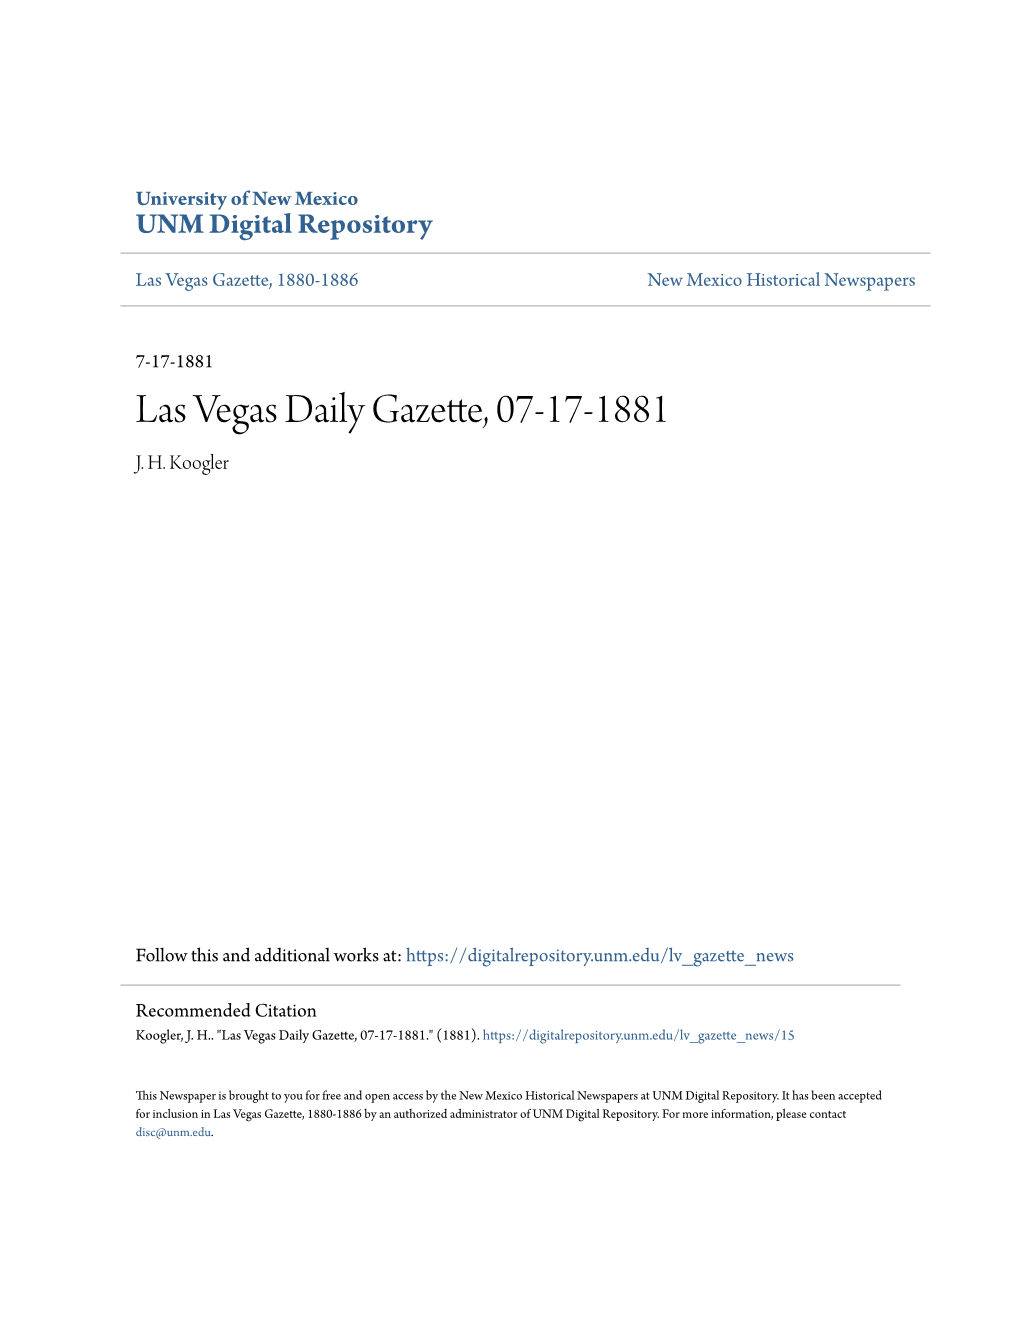 Las Vegas Daily Gazette, 07-17-1881 J